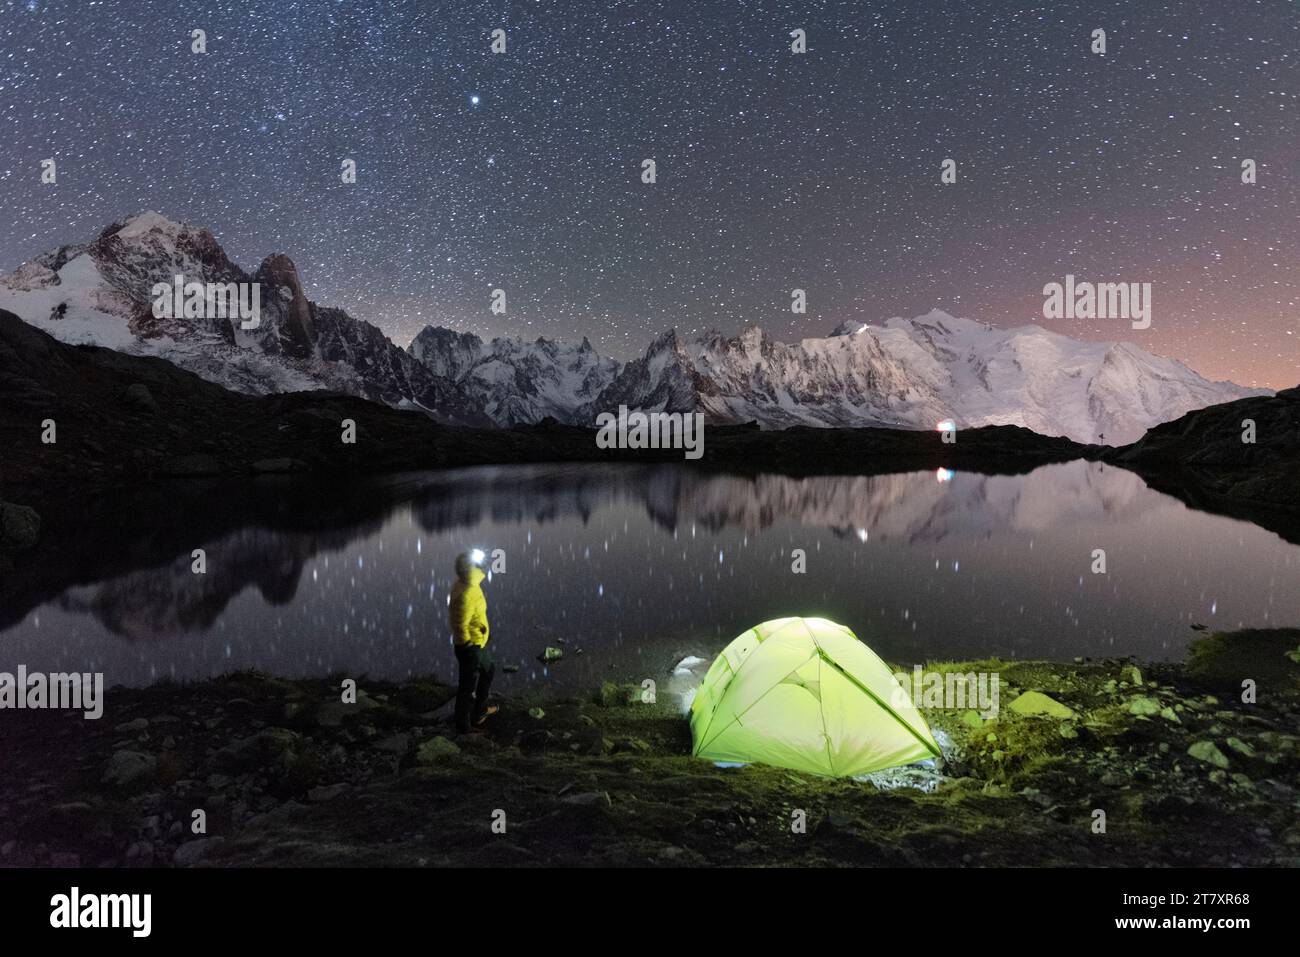 Persona che ammira il cielo stellato all'esterno della tenda che si trova sulla riva del lago Cheserys, circondato dal paesaggio alpino del Monte bianco Foto Stock